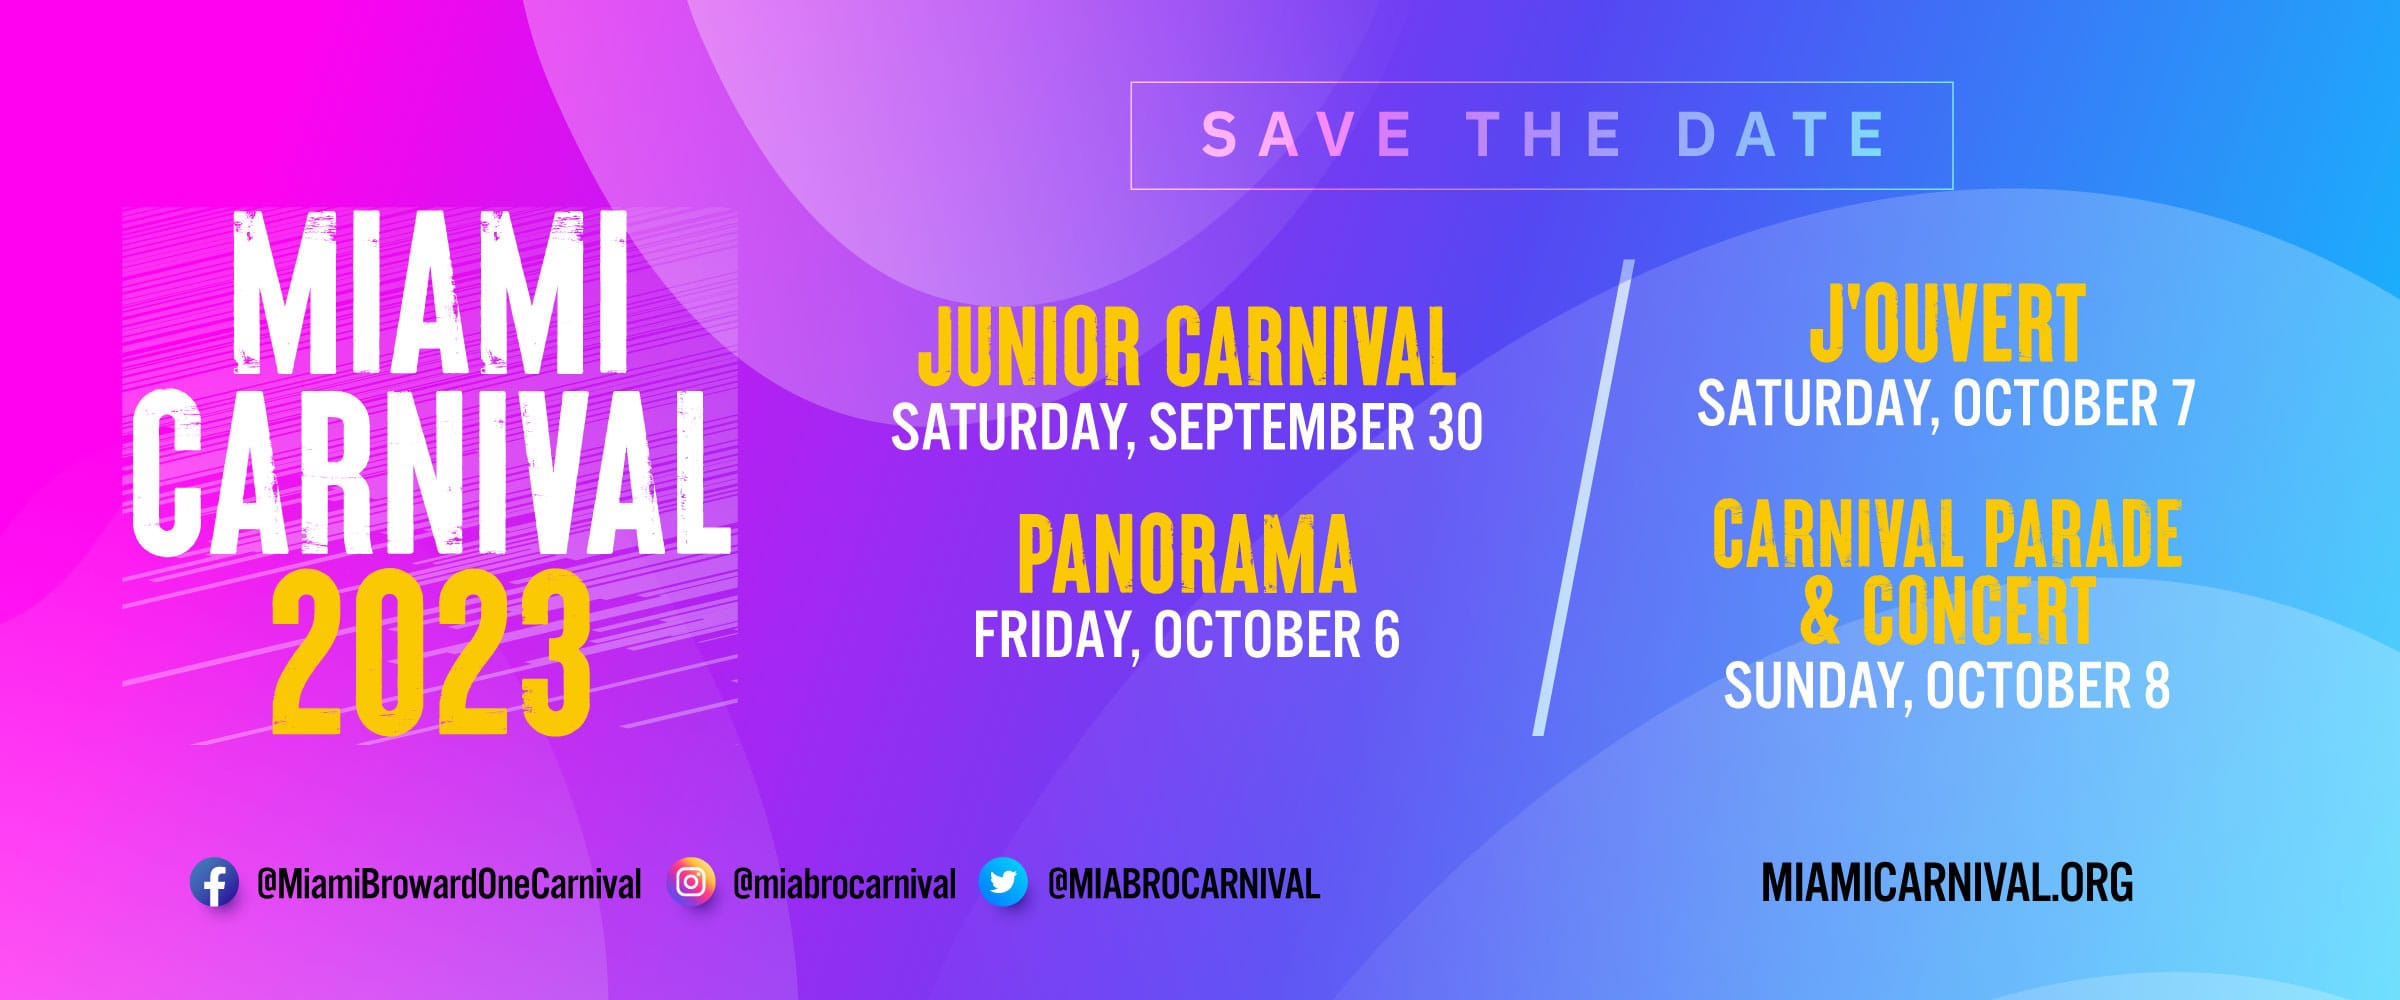 Junior Carnival - Welcome to Miami Carnival